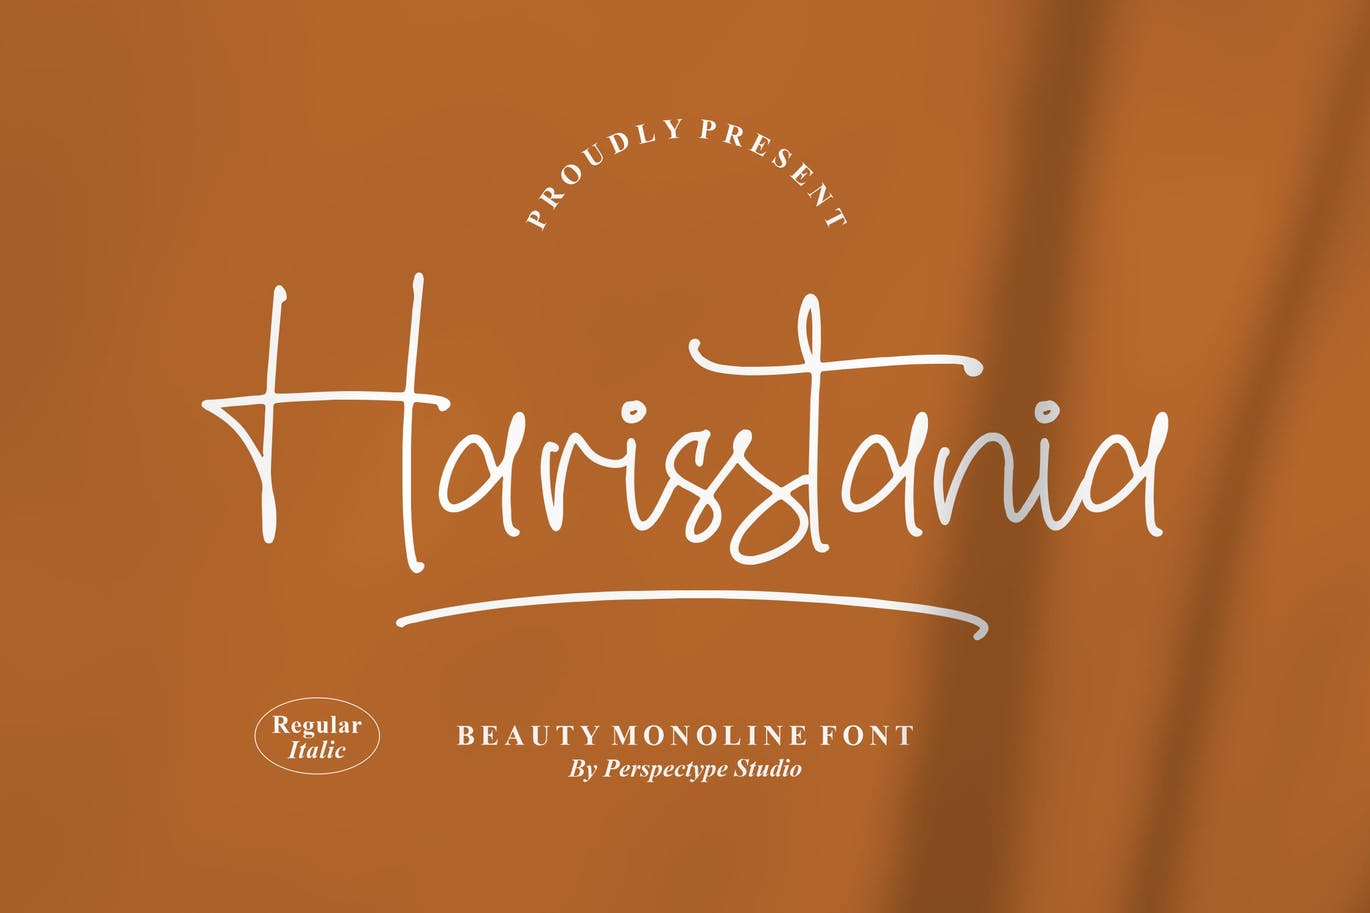 艺术创作单线字体素材 Harisstania Monoline Font 设计素材 第3张